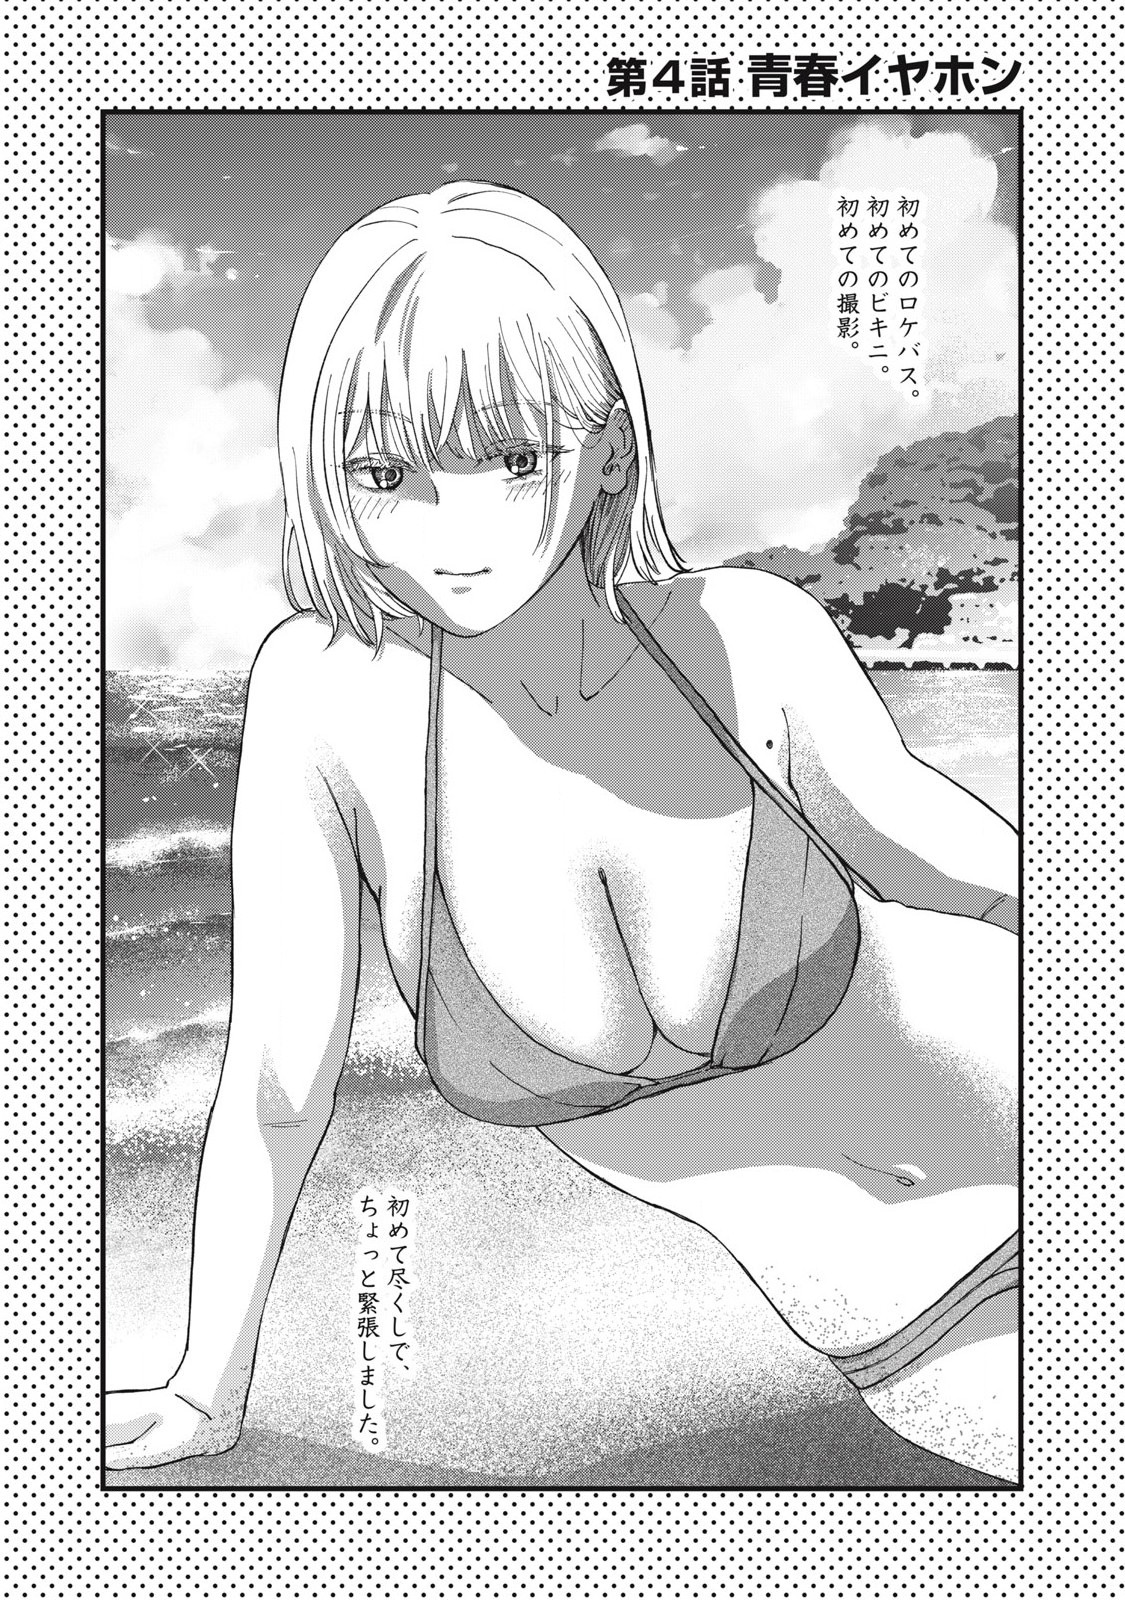 Otona ni Narenai Bokura wa - Chapter 4 - Page 1